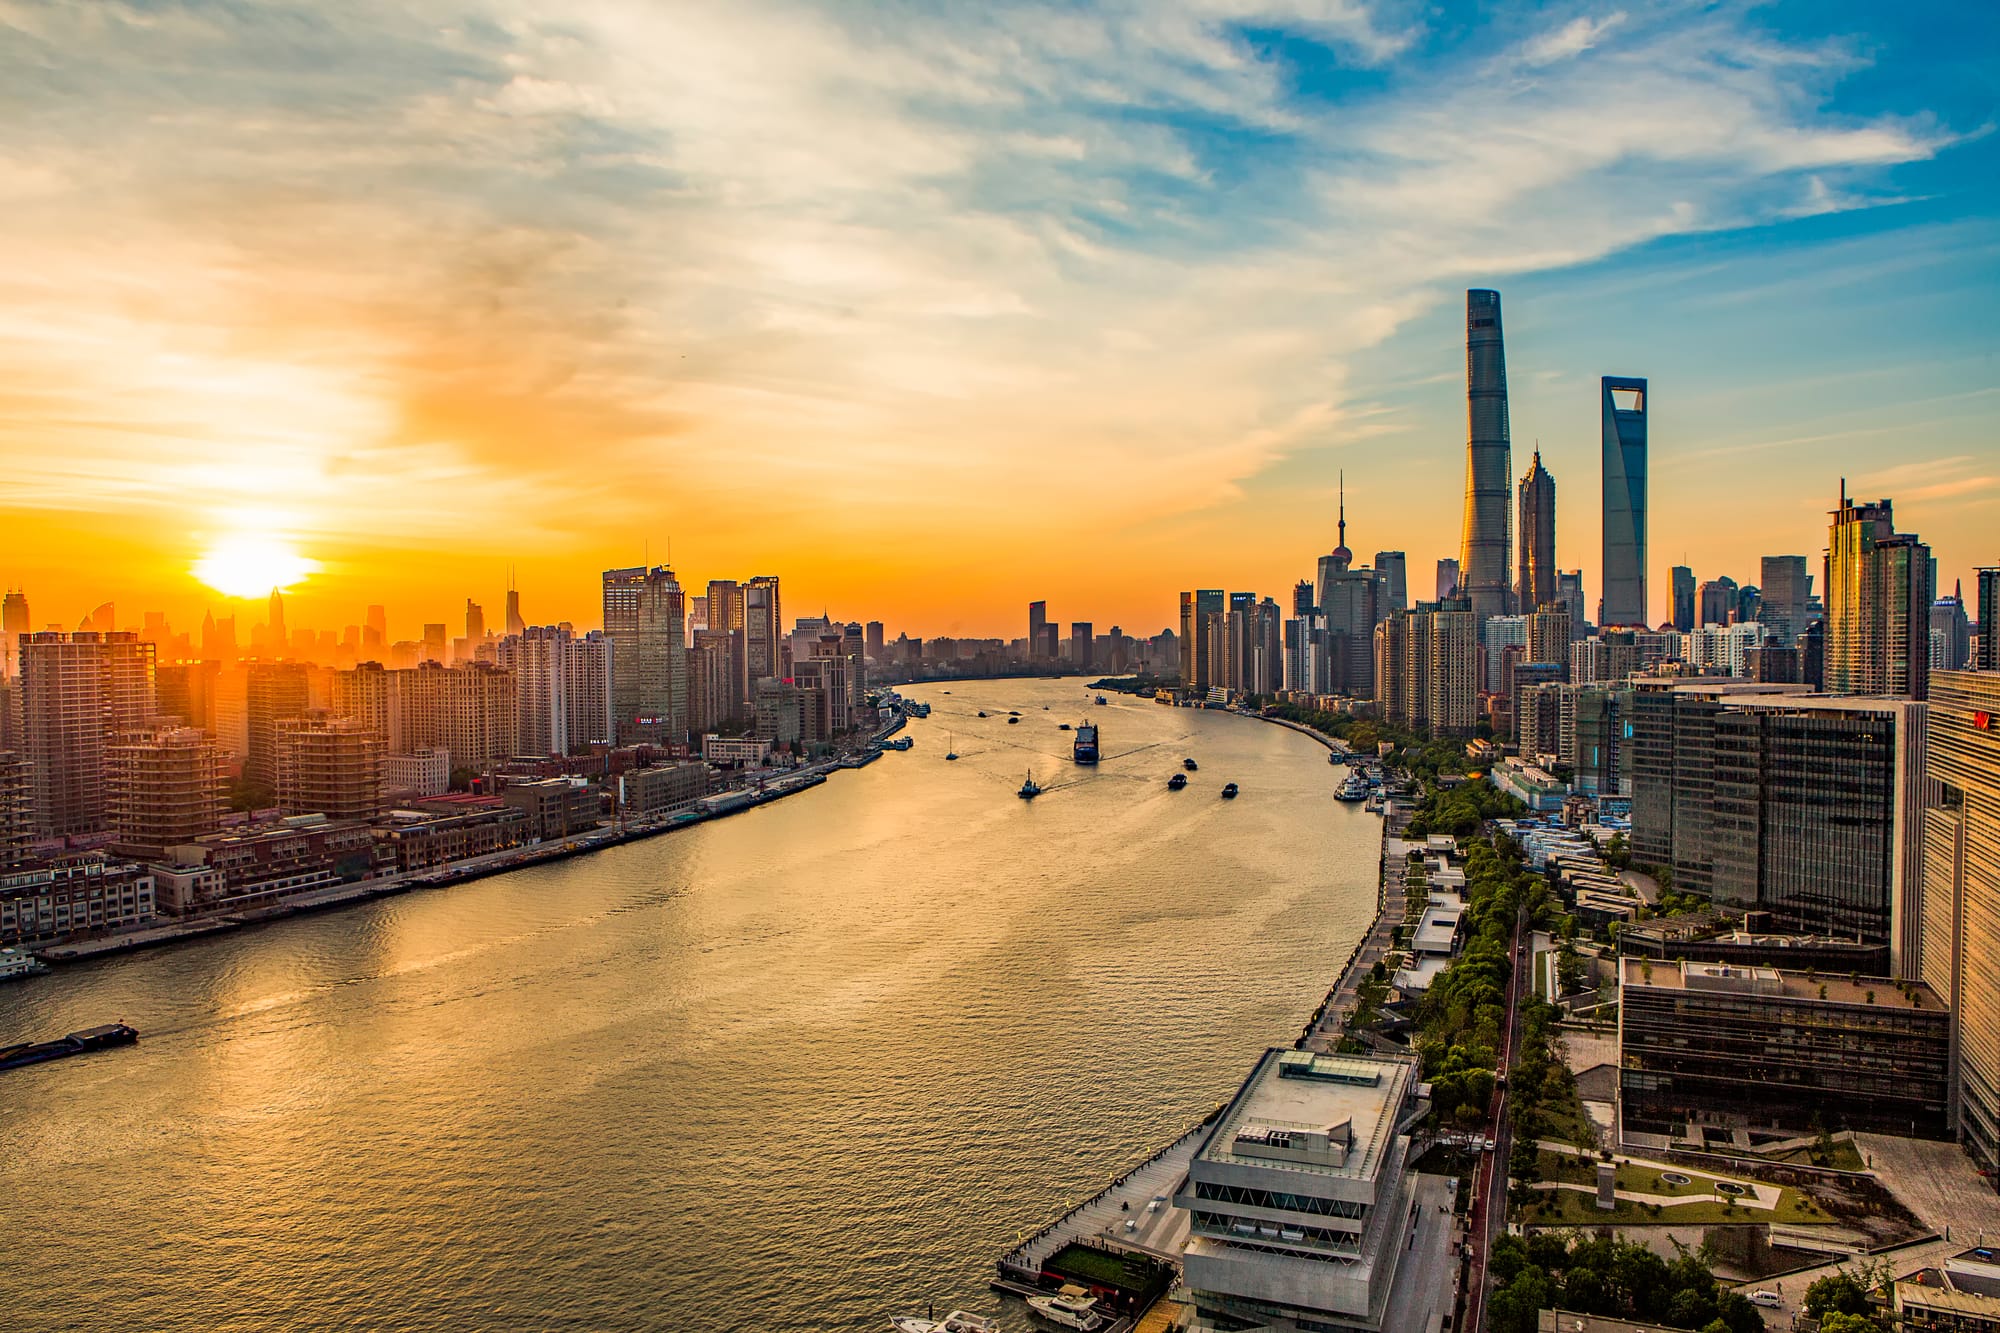 Huangpu Riverside, Shanghai, at sunrise